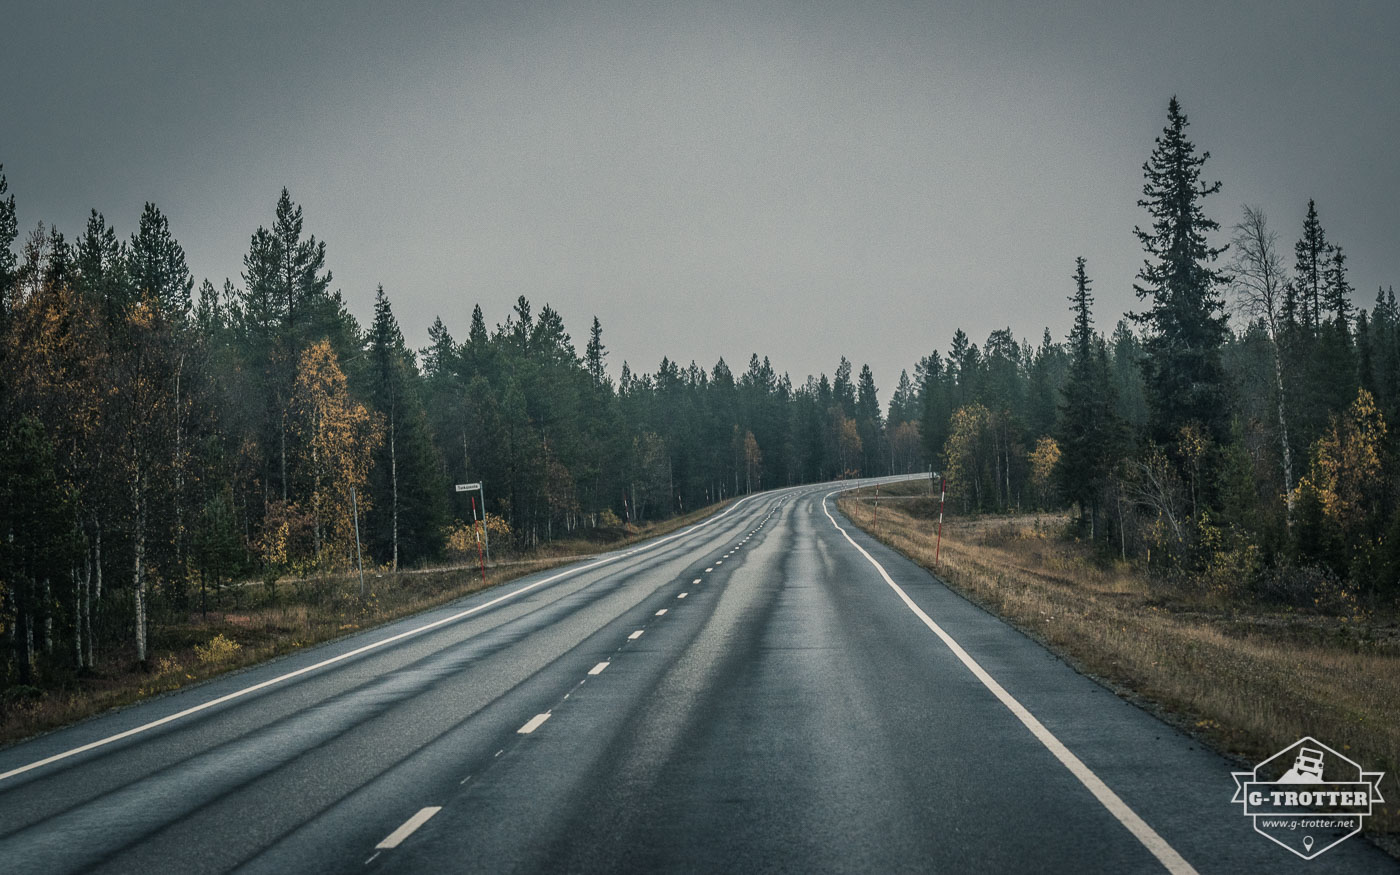 Bild 10 der Bildergalerie “Straßen von Finnland”